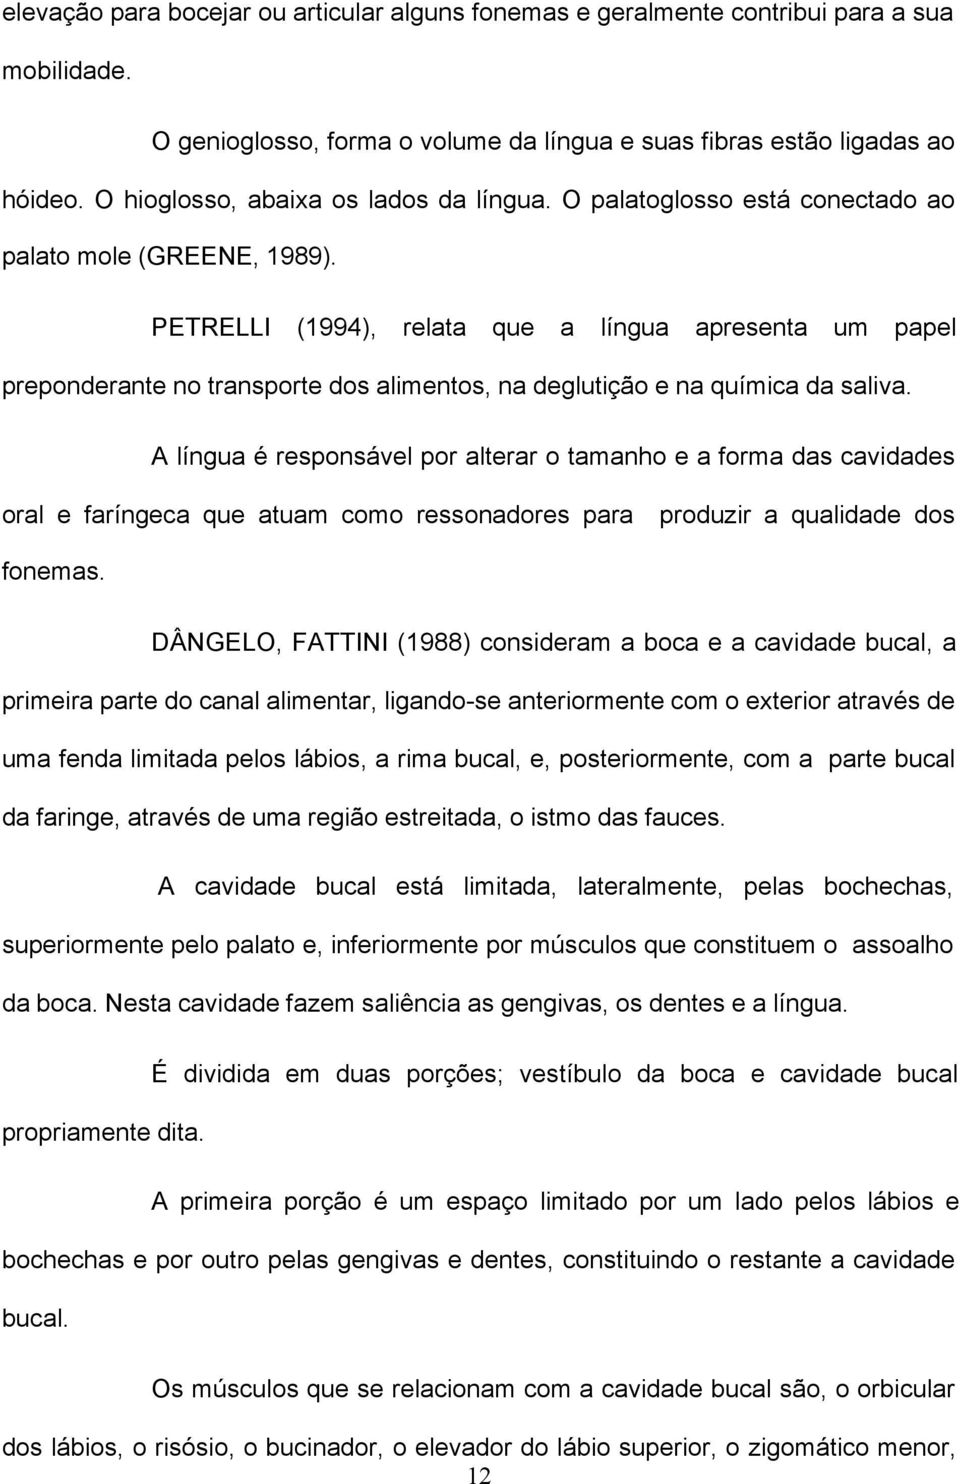 PETRELLI (1994), relata que a língua apresenta um papel preponderante no transporte dos alimentos, na deglutição e na química da saliva.